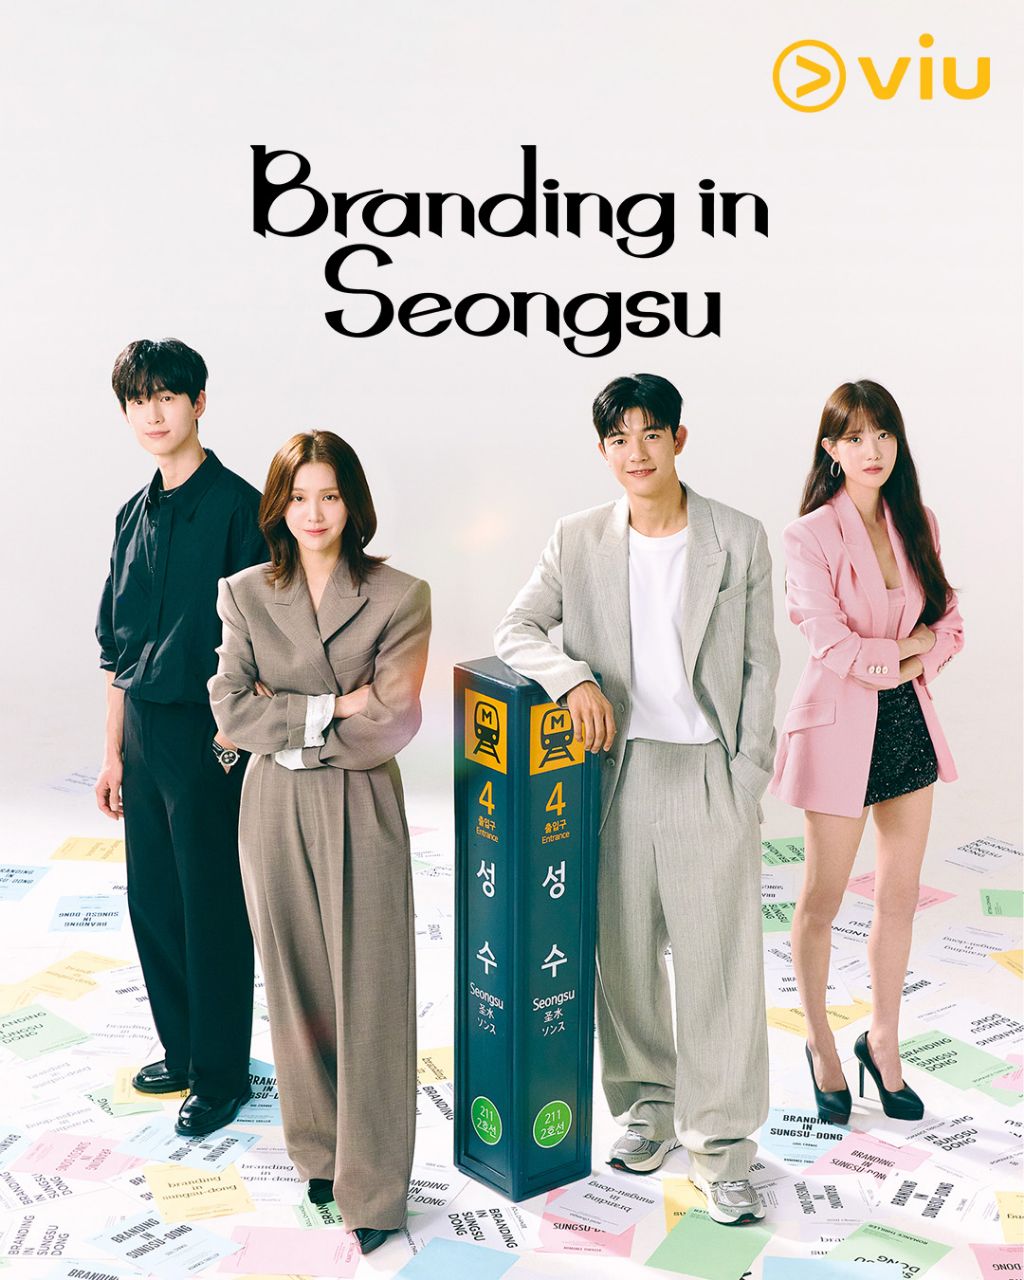 مسلسل العلامة التجارية في سيونغسو Branding in Seongsu الحلقة 11